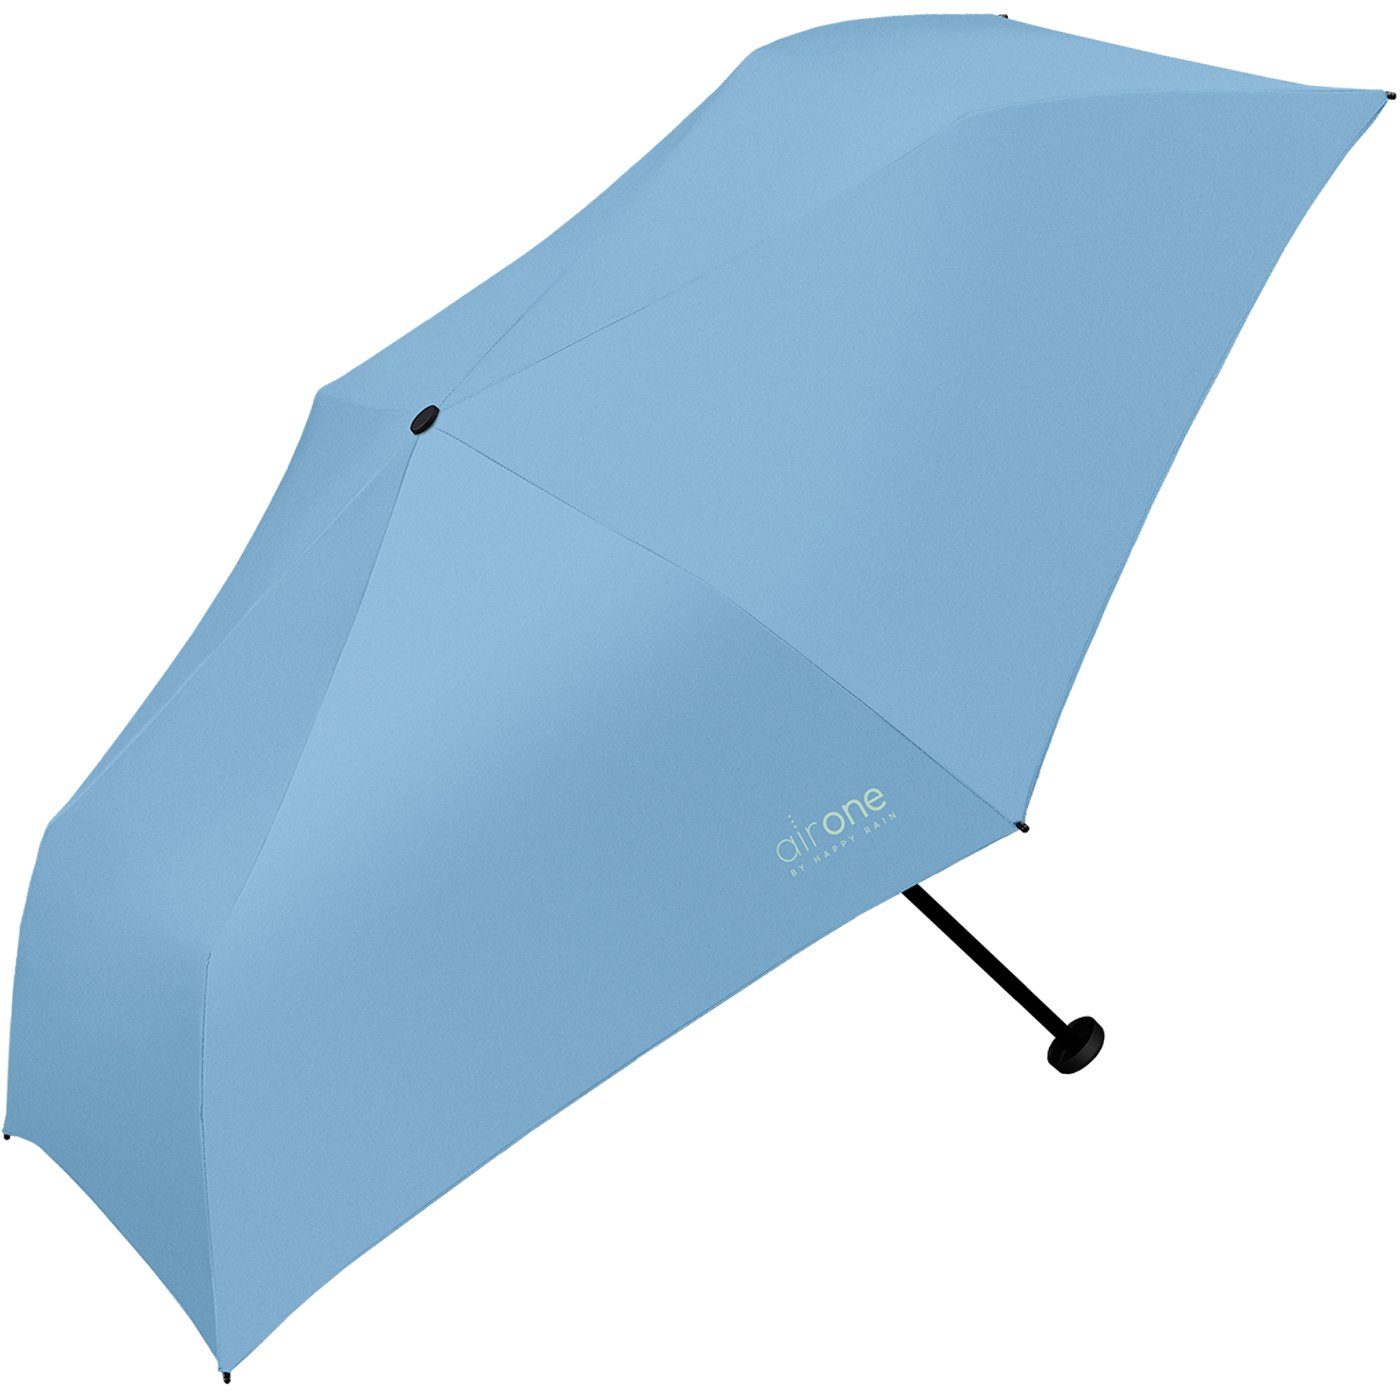 für 99 superleicht, Gramm Minischirm HAPPY Air One leichtester - blau perfekt Untewegs Mini-Schirm Taschenregenschirm - RAIN